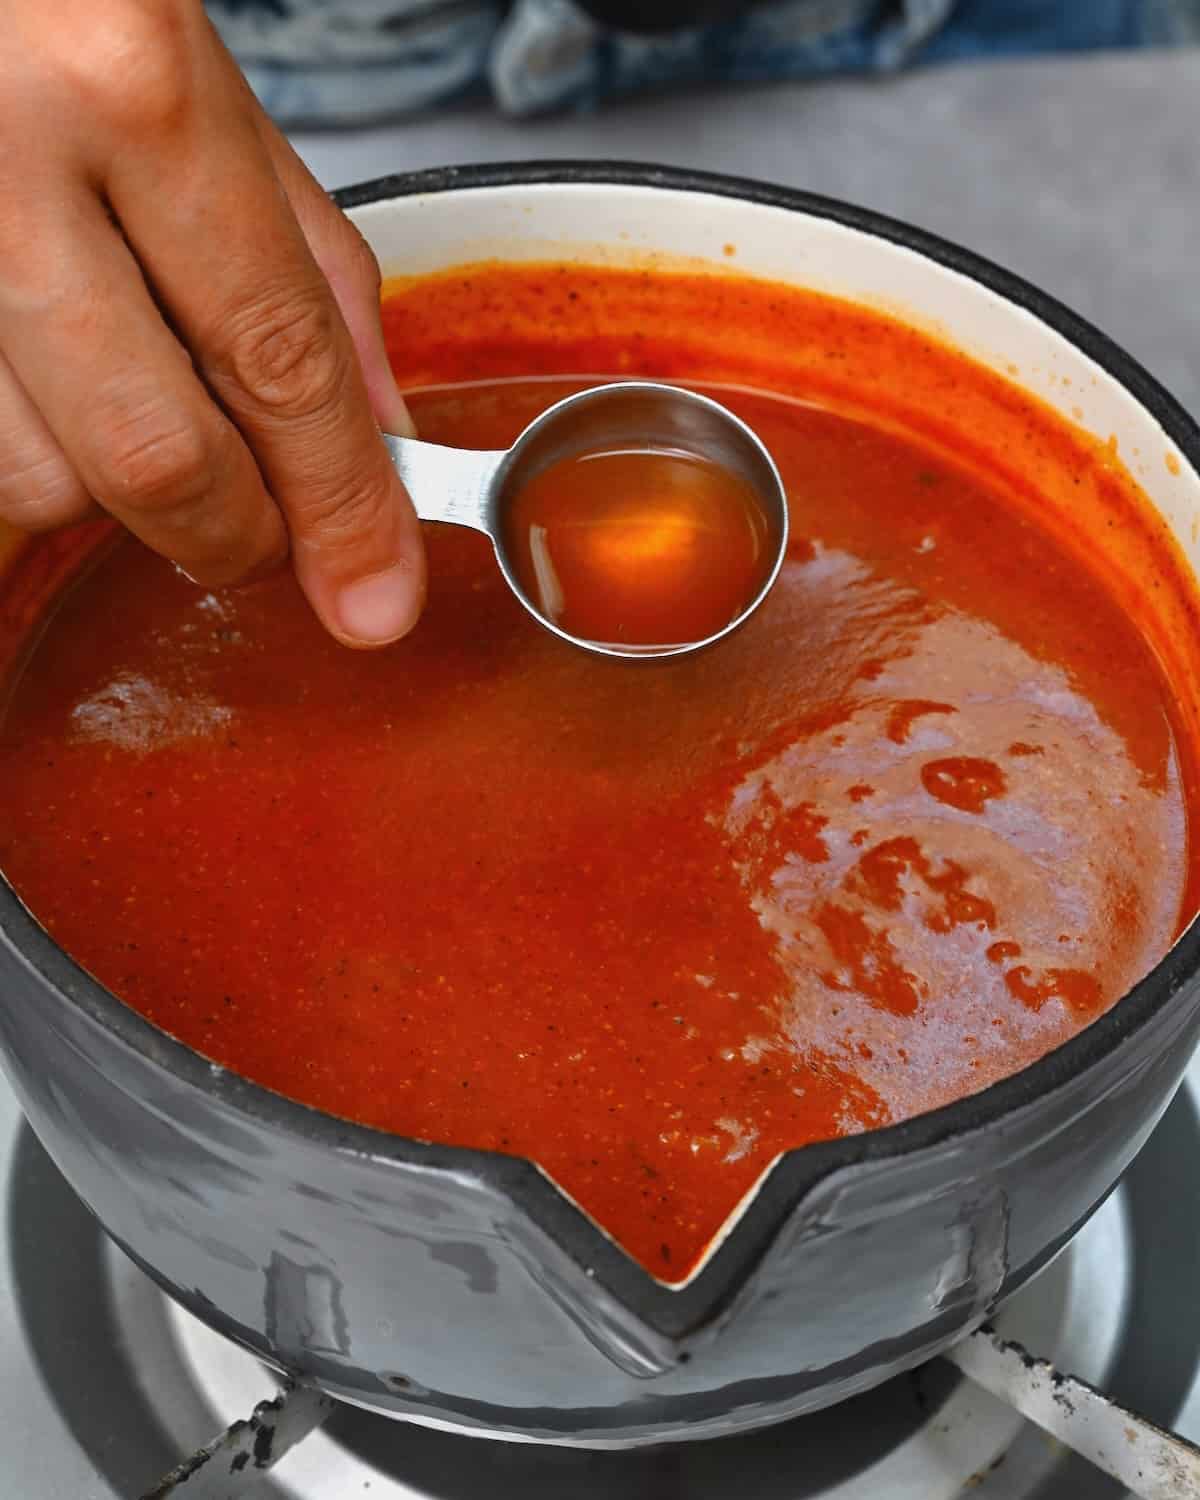 Adding vinegar to homemade enchilada sauce